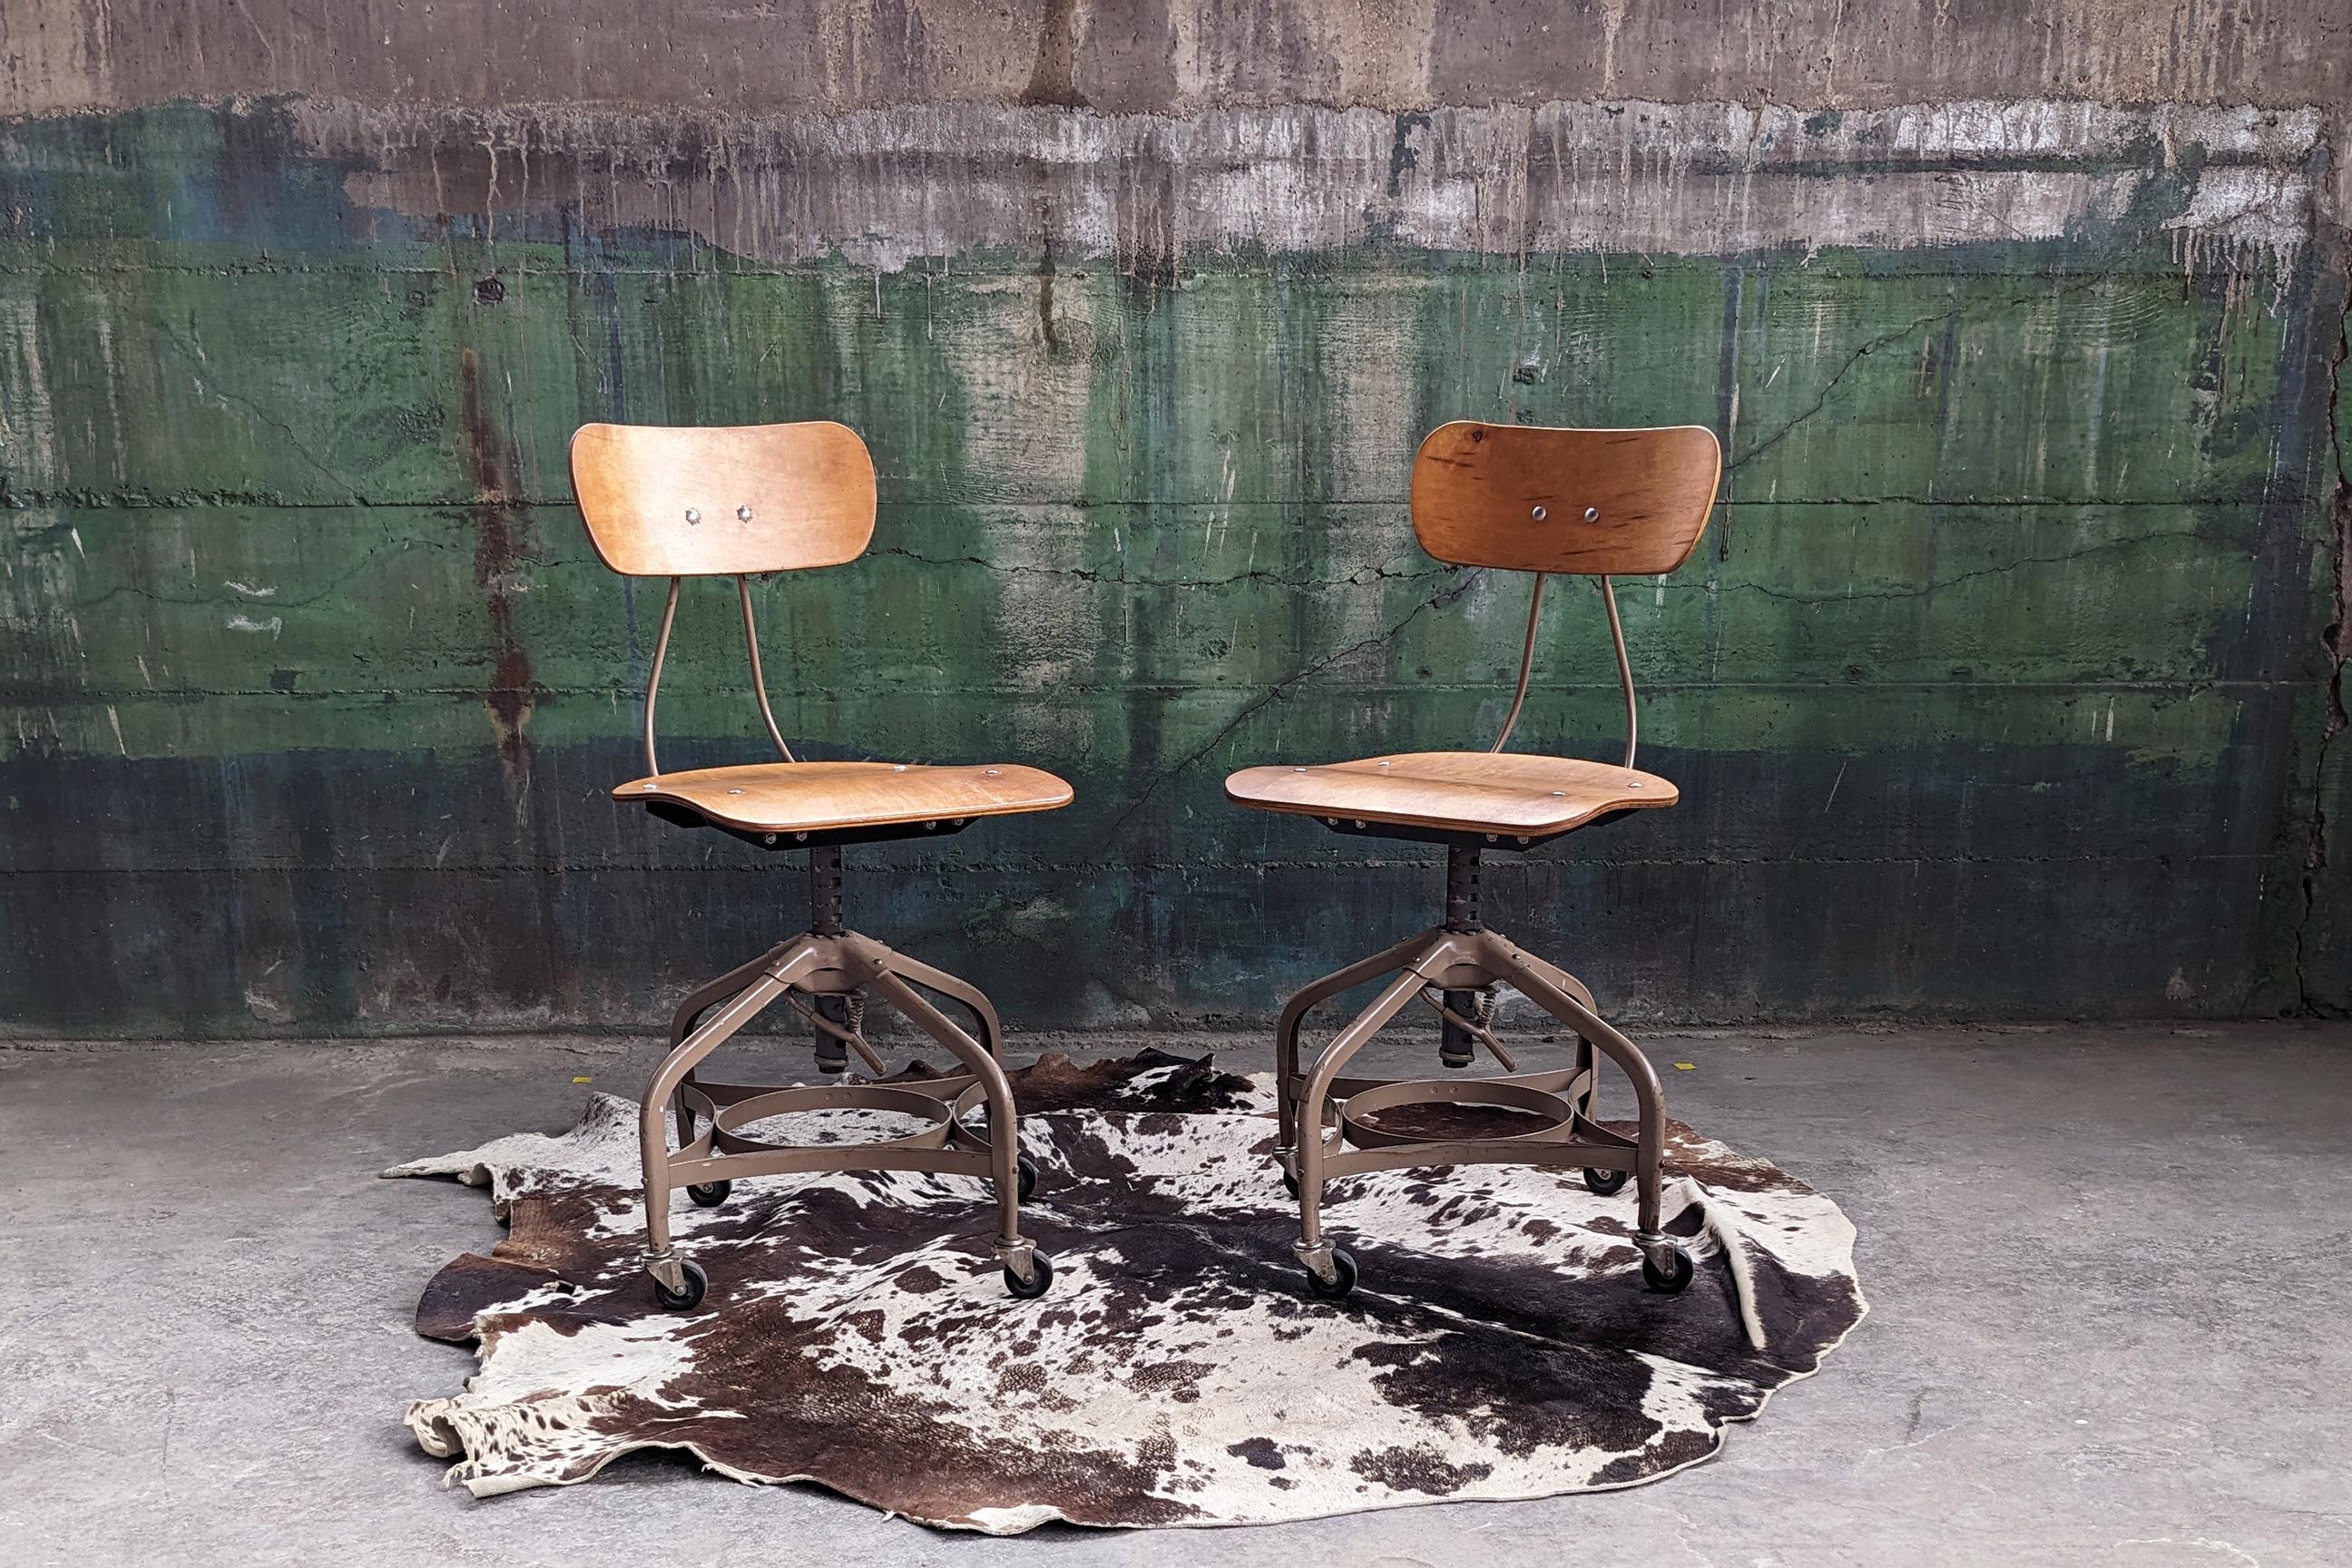 PAIRE de 2 chaises Toledo Metal Furniture Co. datant du milieu du 20e siècle qui peuvent être réglées pour être utilisées dans un bureau, un atelier ou une université.

Ces chaises ont une assise et un dossier en bois courbé avec une base en métal